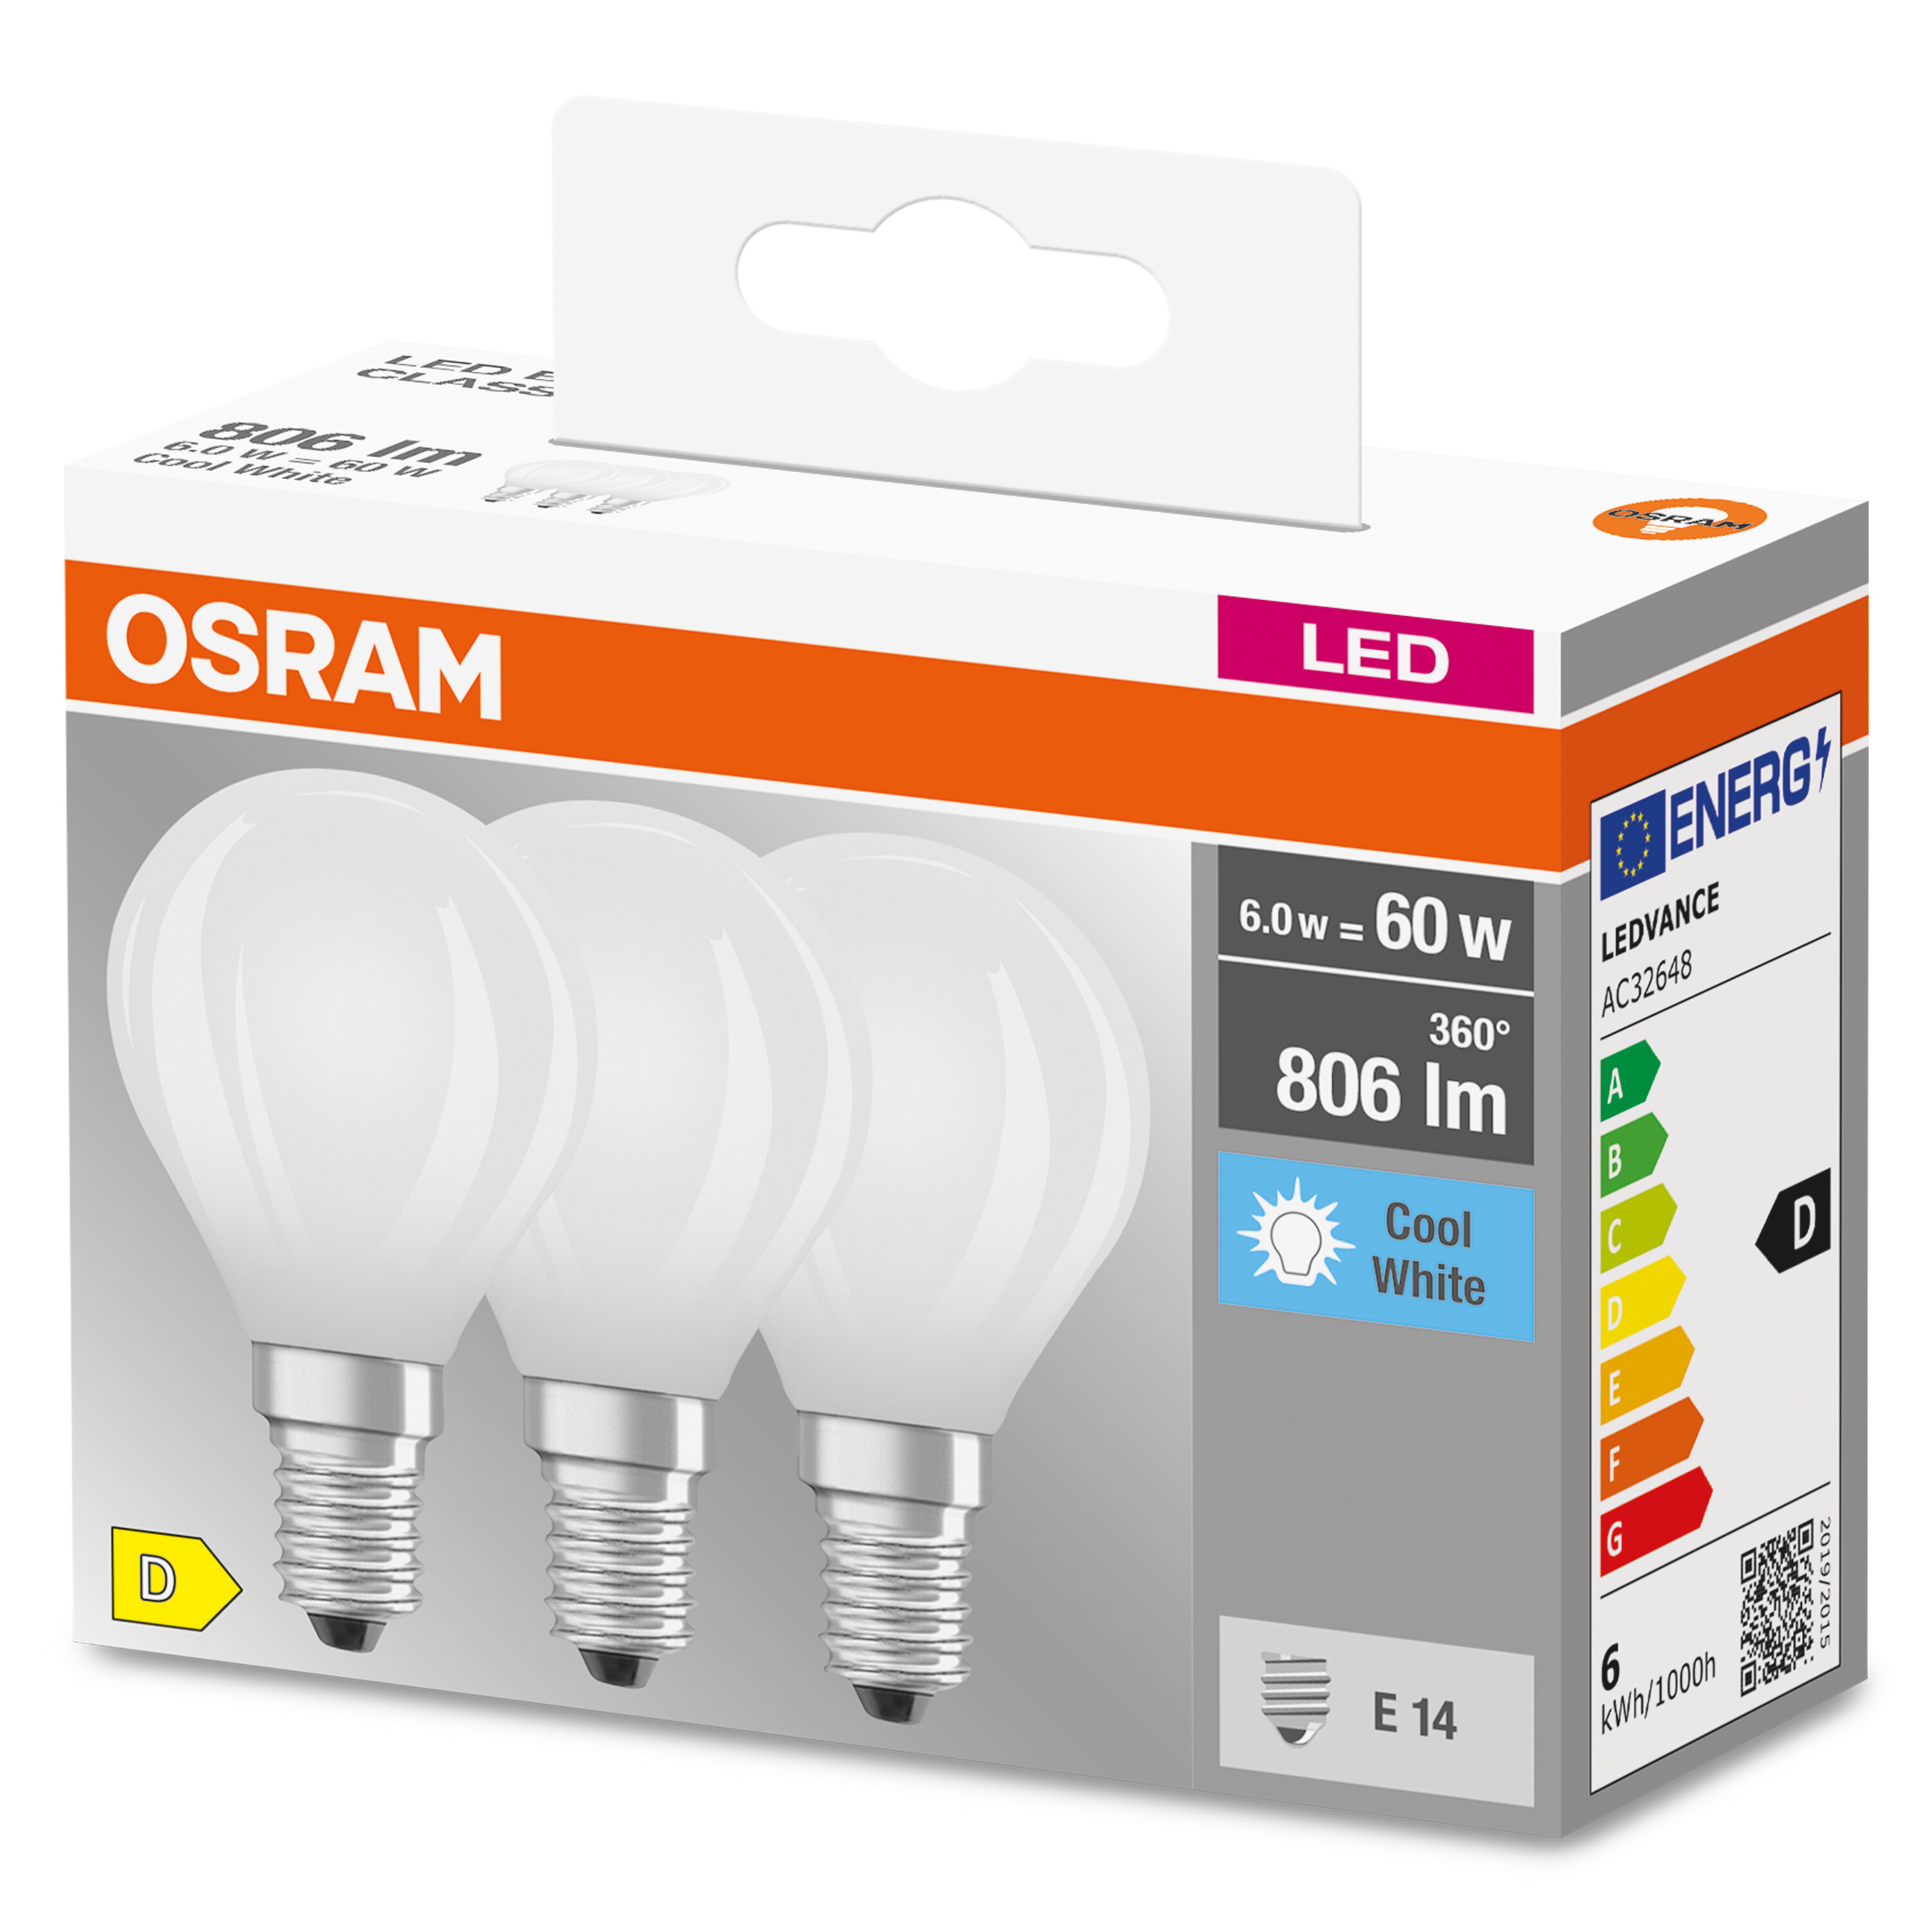 LED CLASSIC Lampe LED Lumen 806 BASE Kaltweiß OSRAM  P